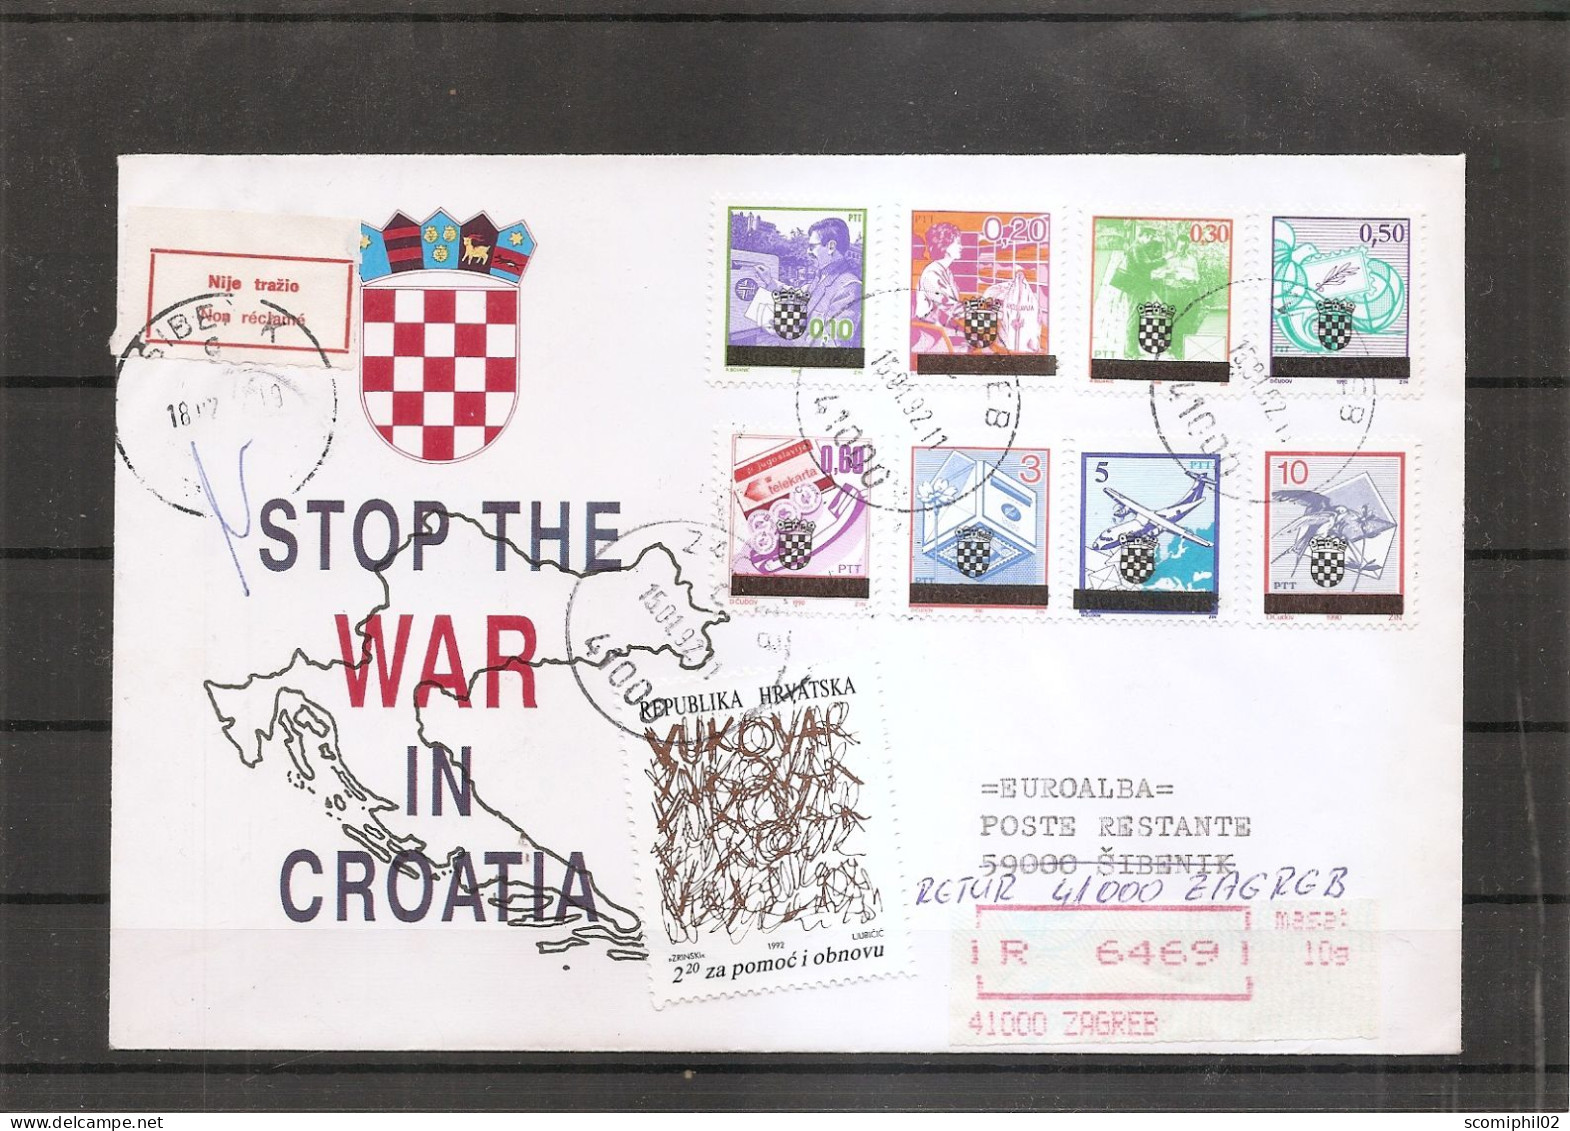 Croatie ( Lettre Recommandée De 1992 De Zagreb Vers Sibenie Et Réexpédiée à Voir) - Croatia